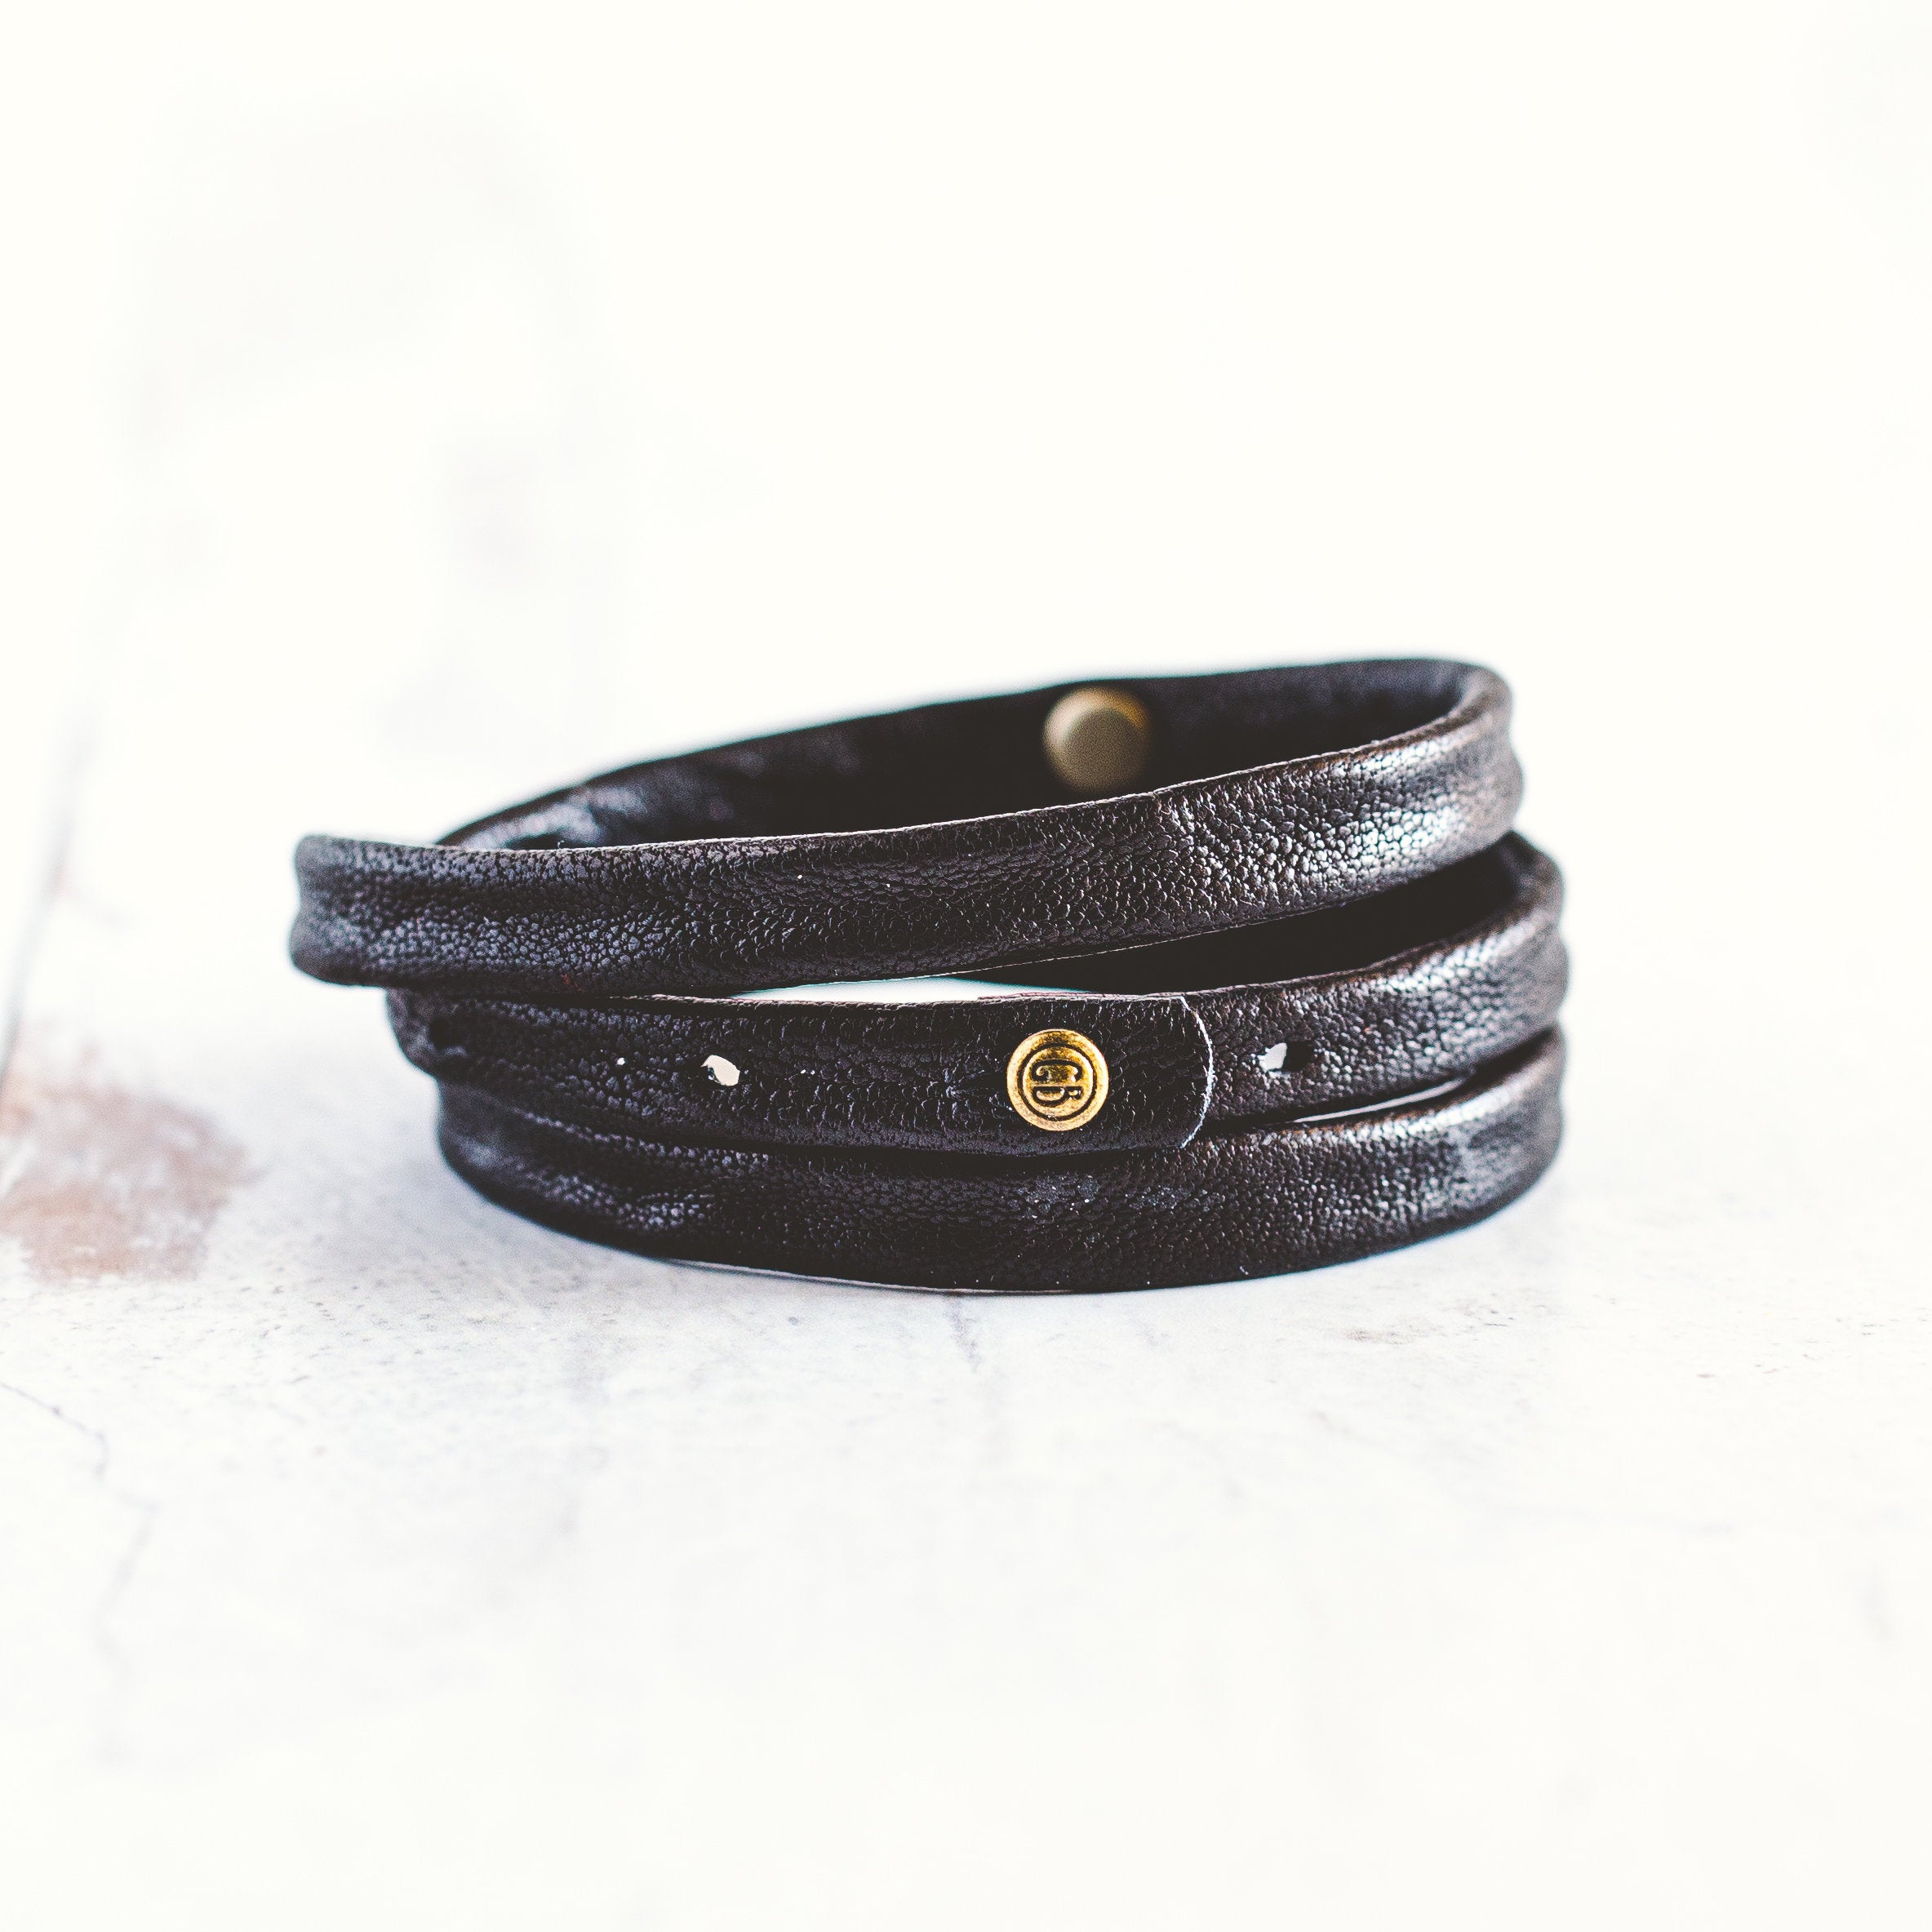  V-MORO Multilayer Wrap Suede Leather Strap Bracelet